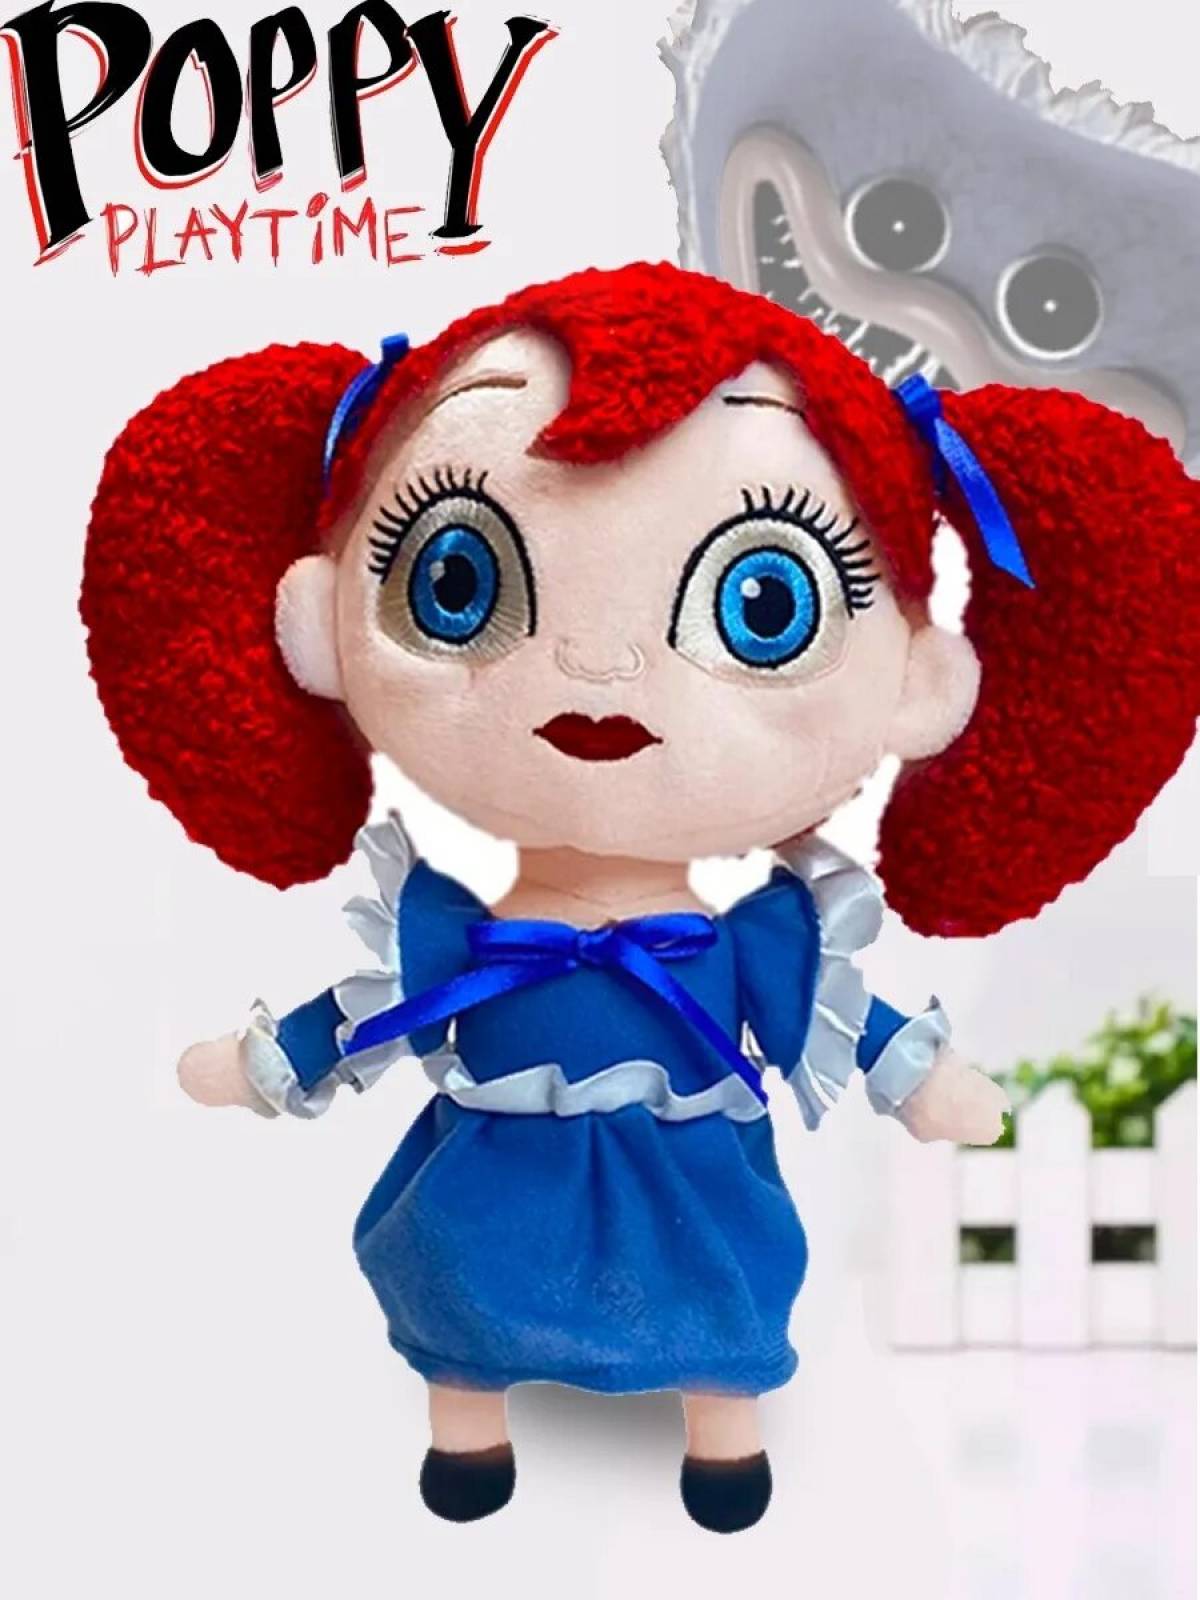 Фотка поппи плейтайм. Поппи Плэйтайм. Кукла из попи Плейтайм. Кукла Поппи Плейтайм игрушка. Кукла Поппи Хагги Вагги Poppy Playtime.